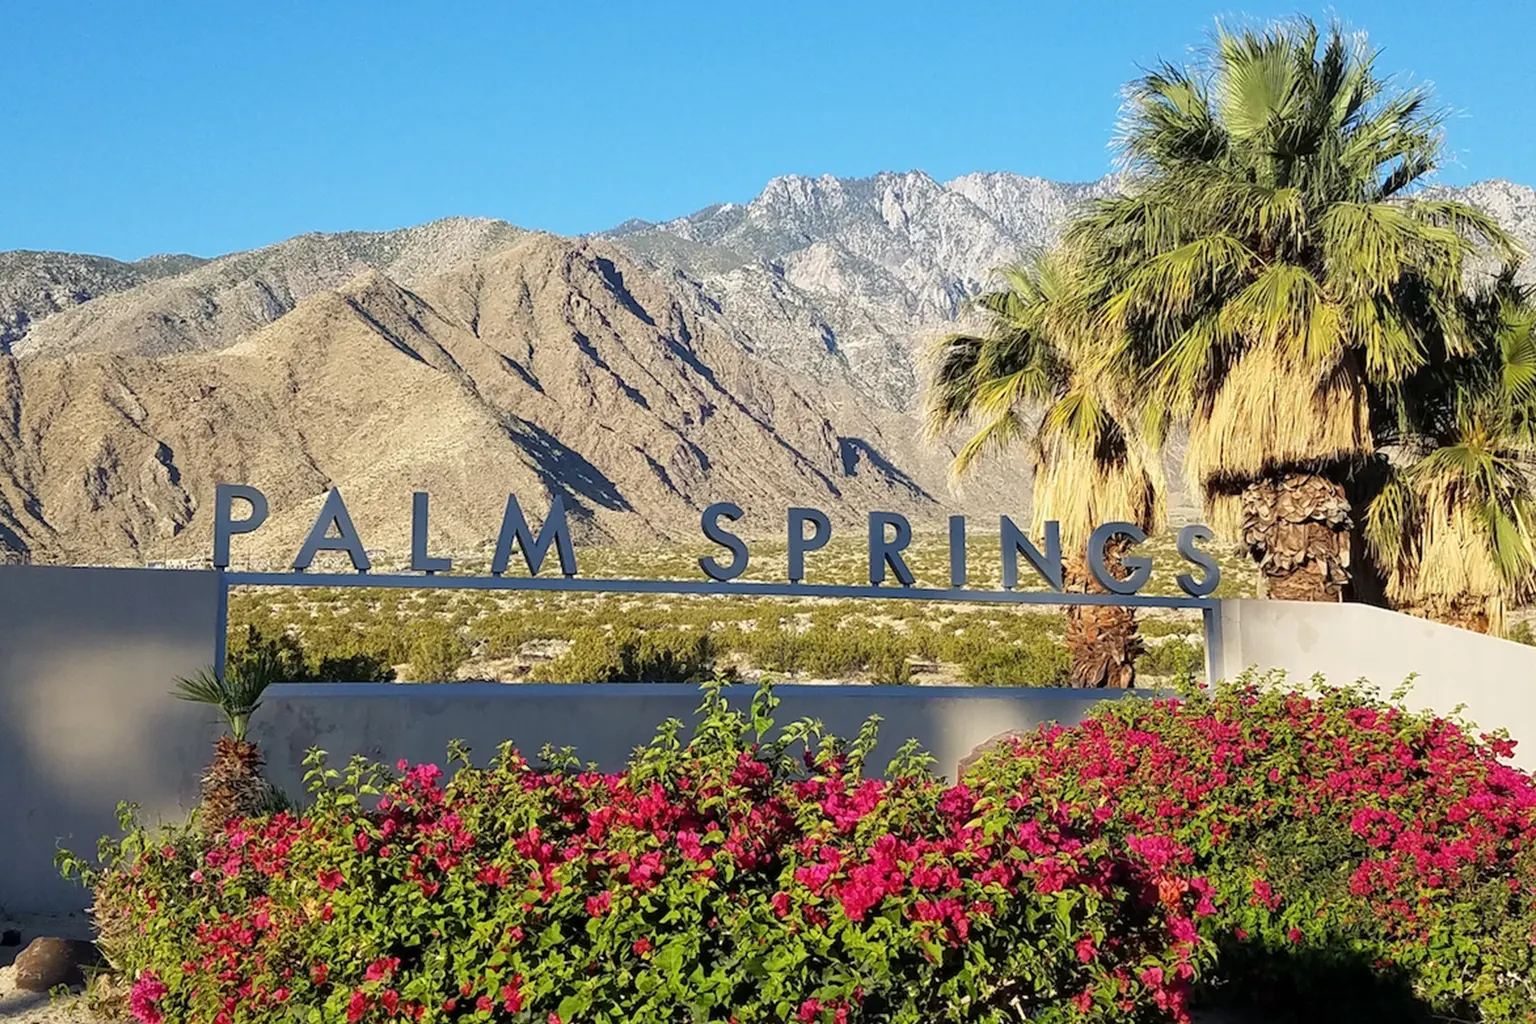 1) Palm Springs